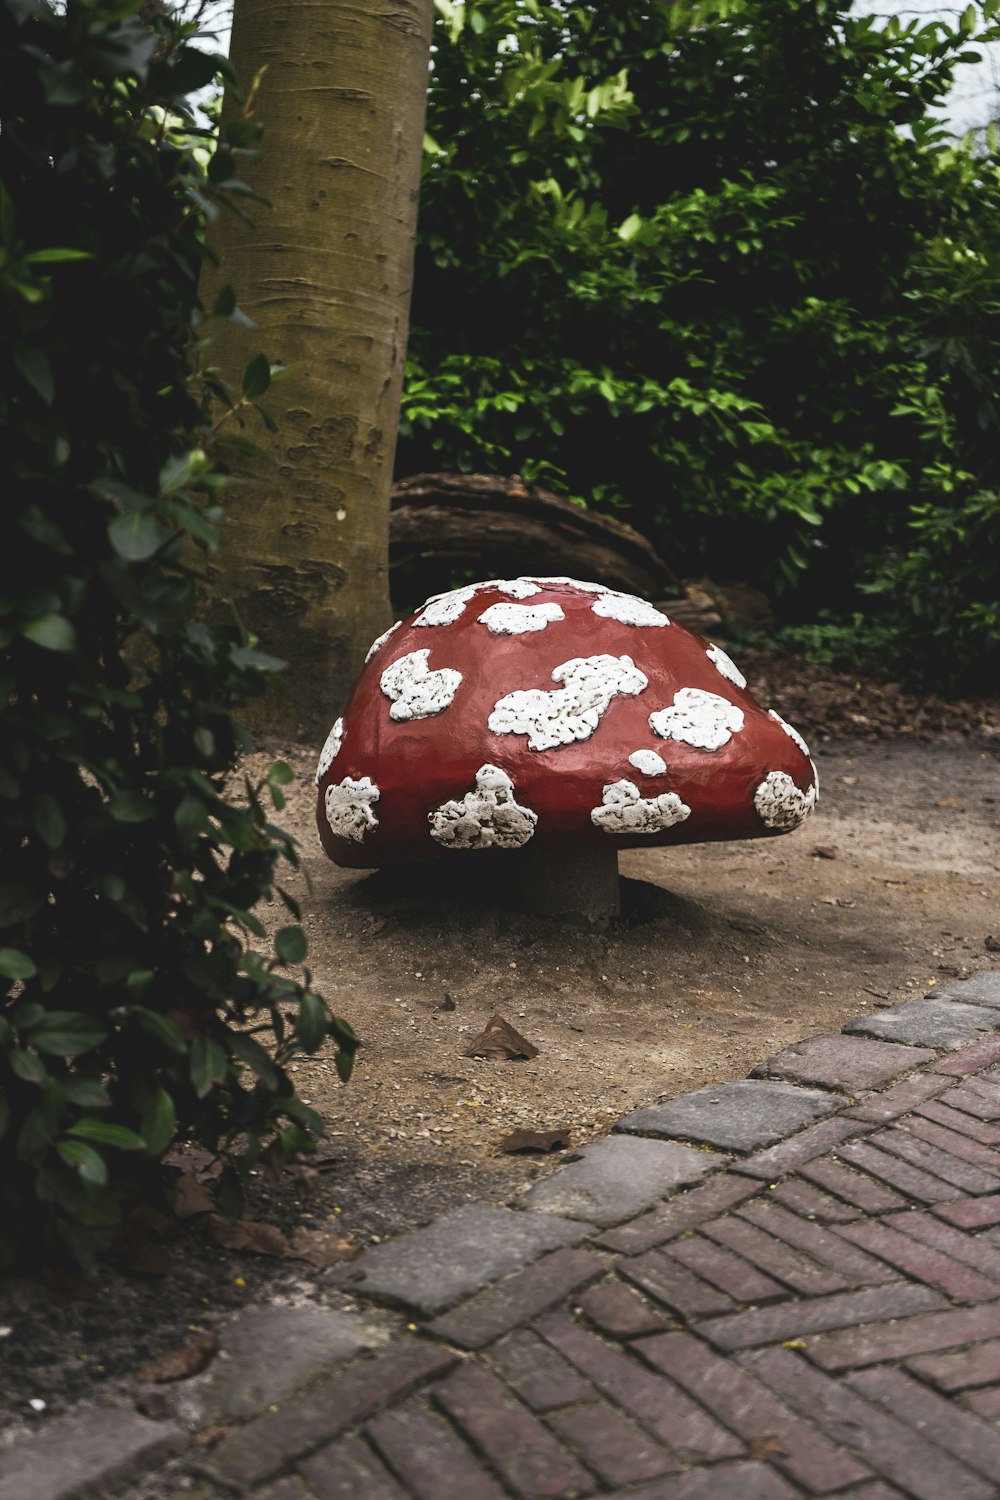 나무 옆 땅에 앉아 있는 빨간색과 흰색 버섯